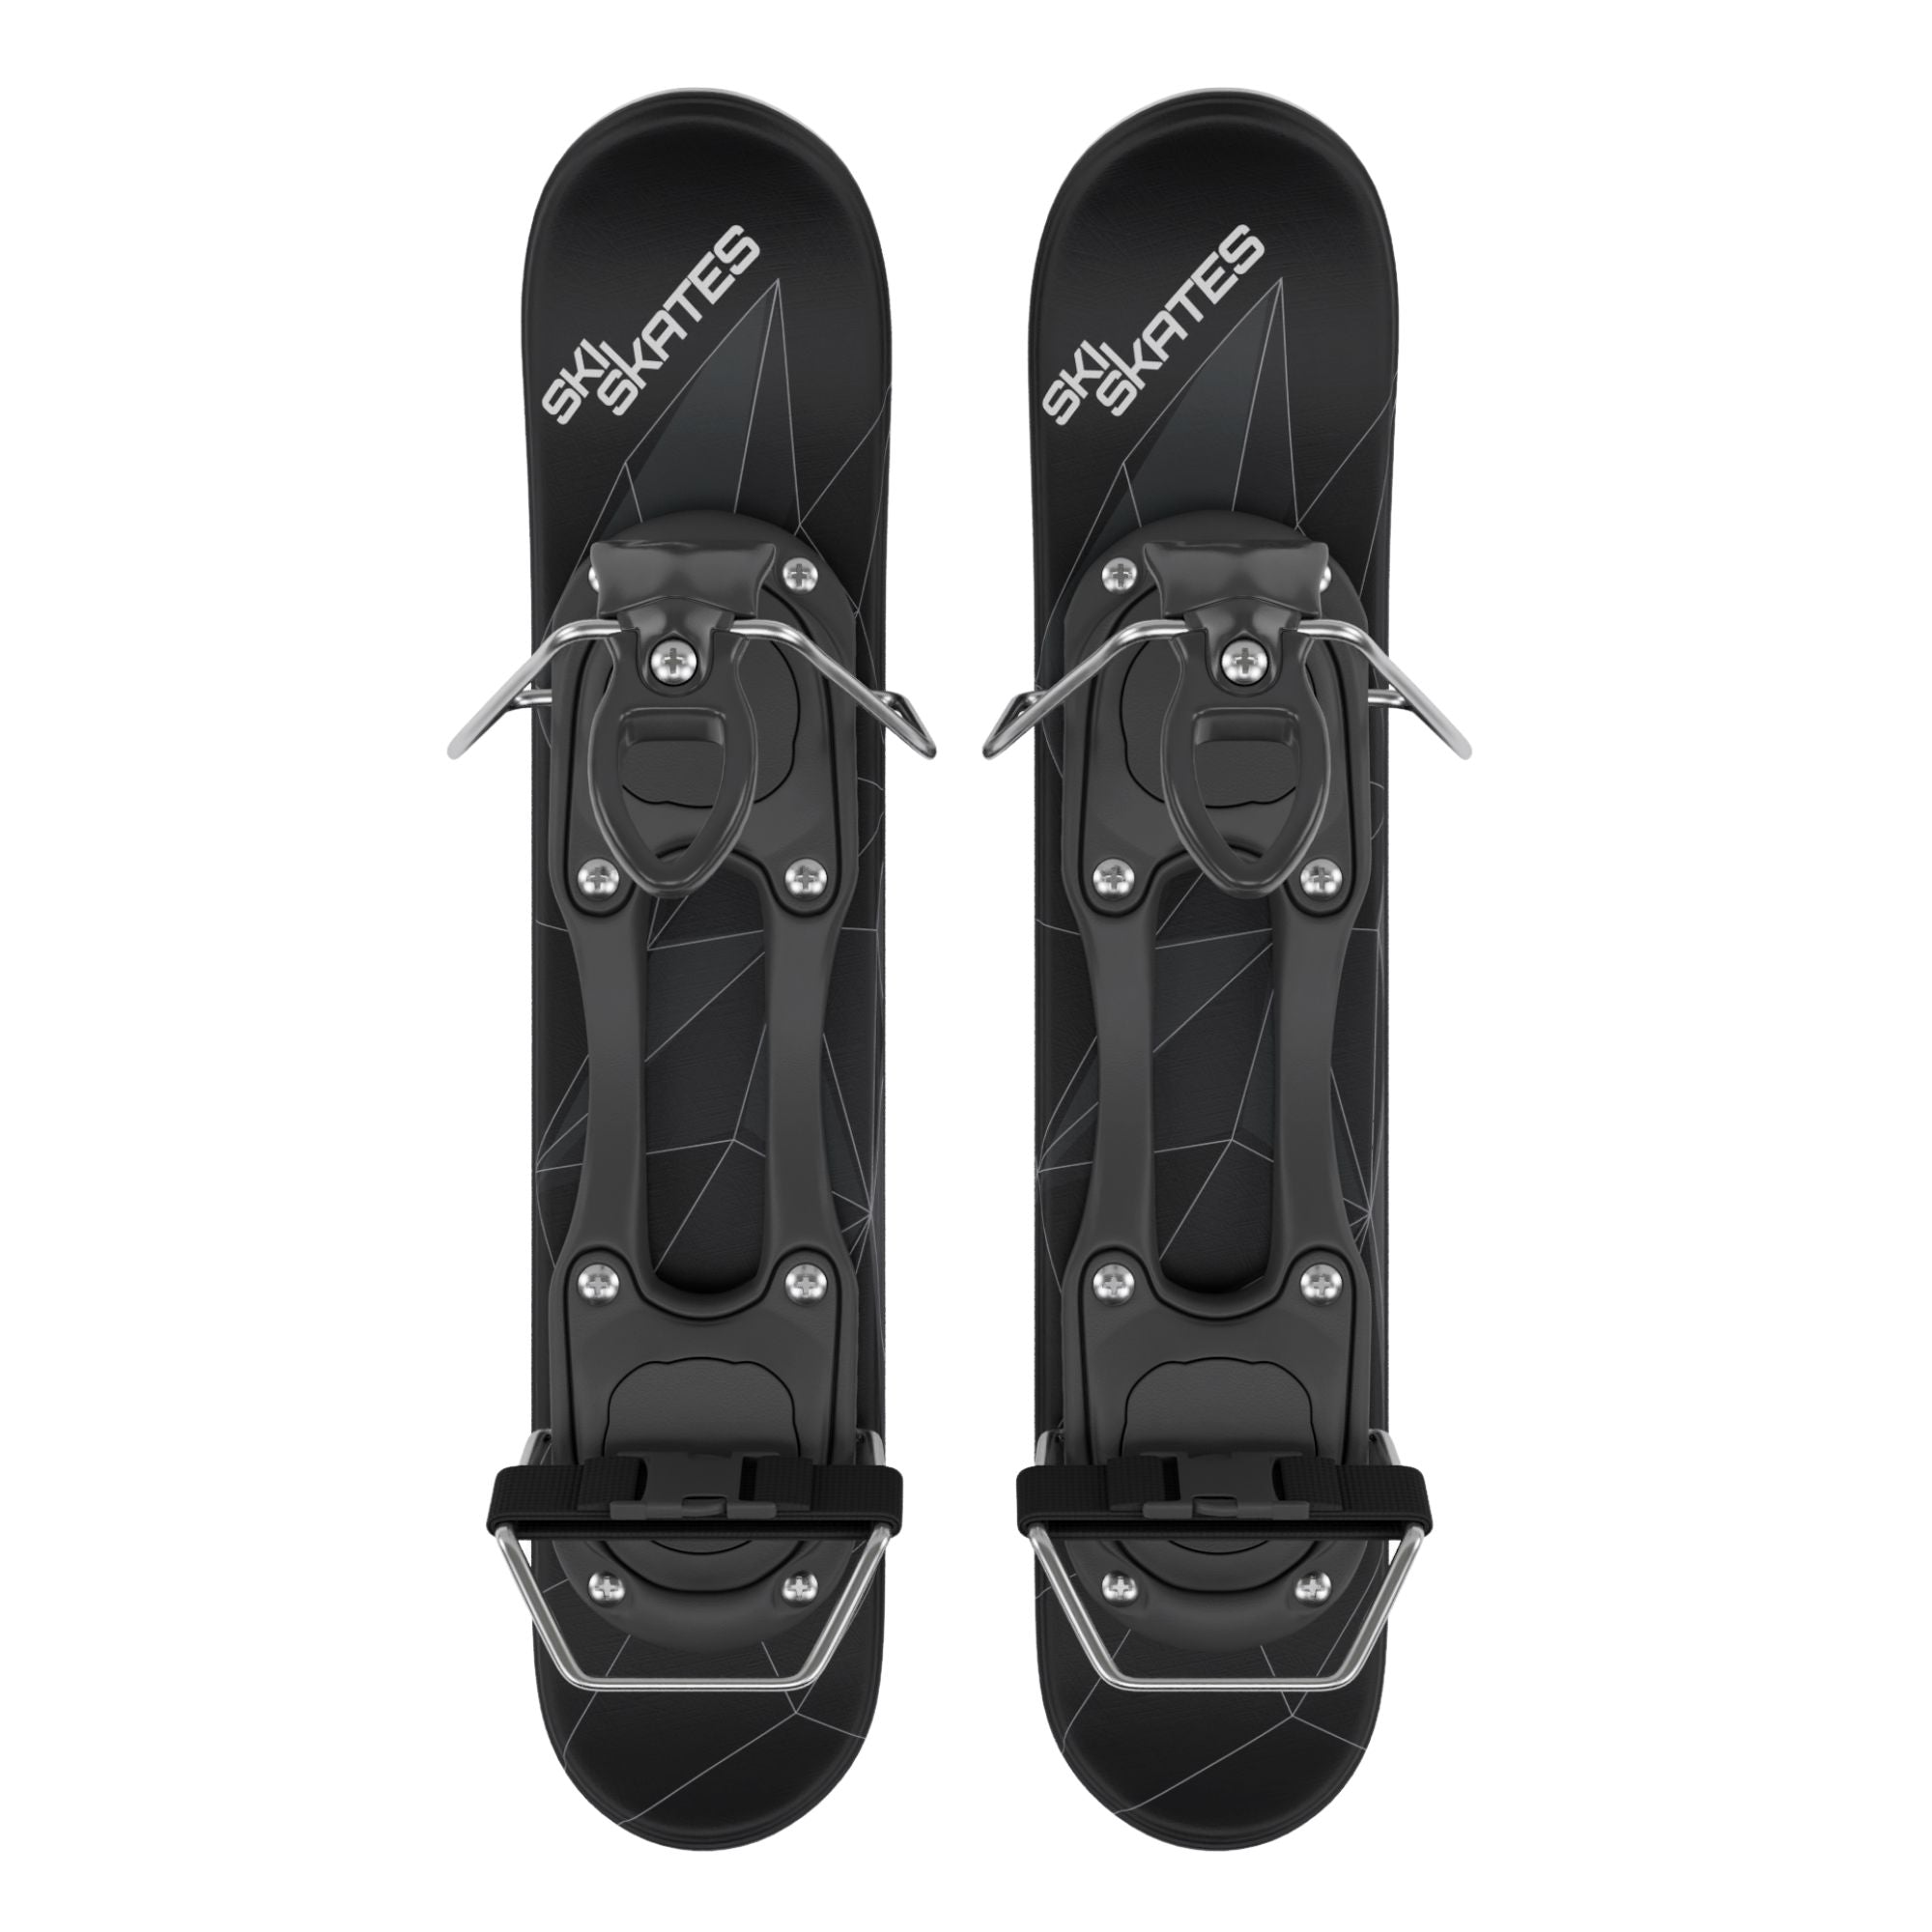 Mini Ski Skates Snow Shoes, Mini Ski Skates Snowfeet